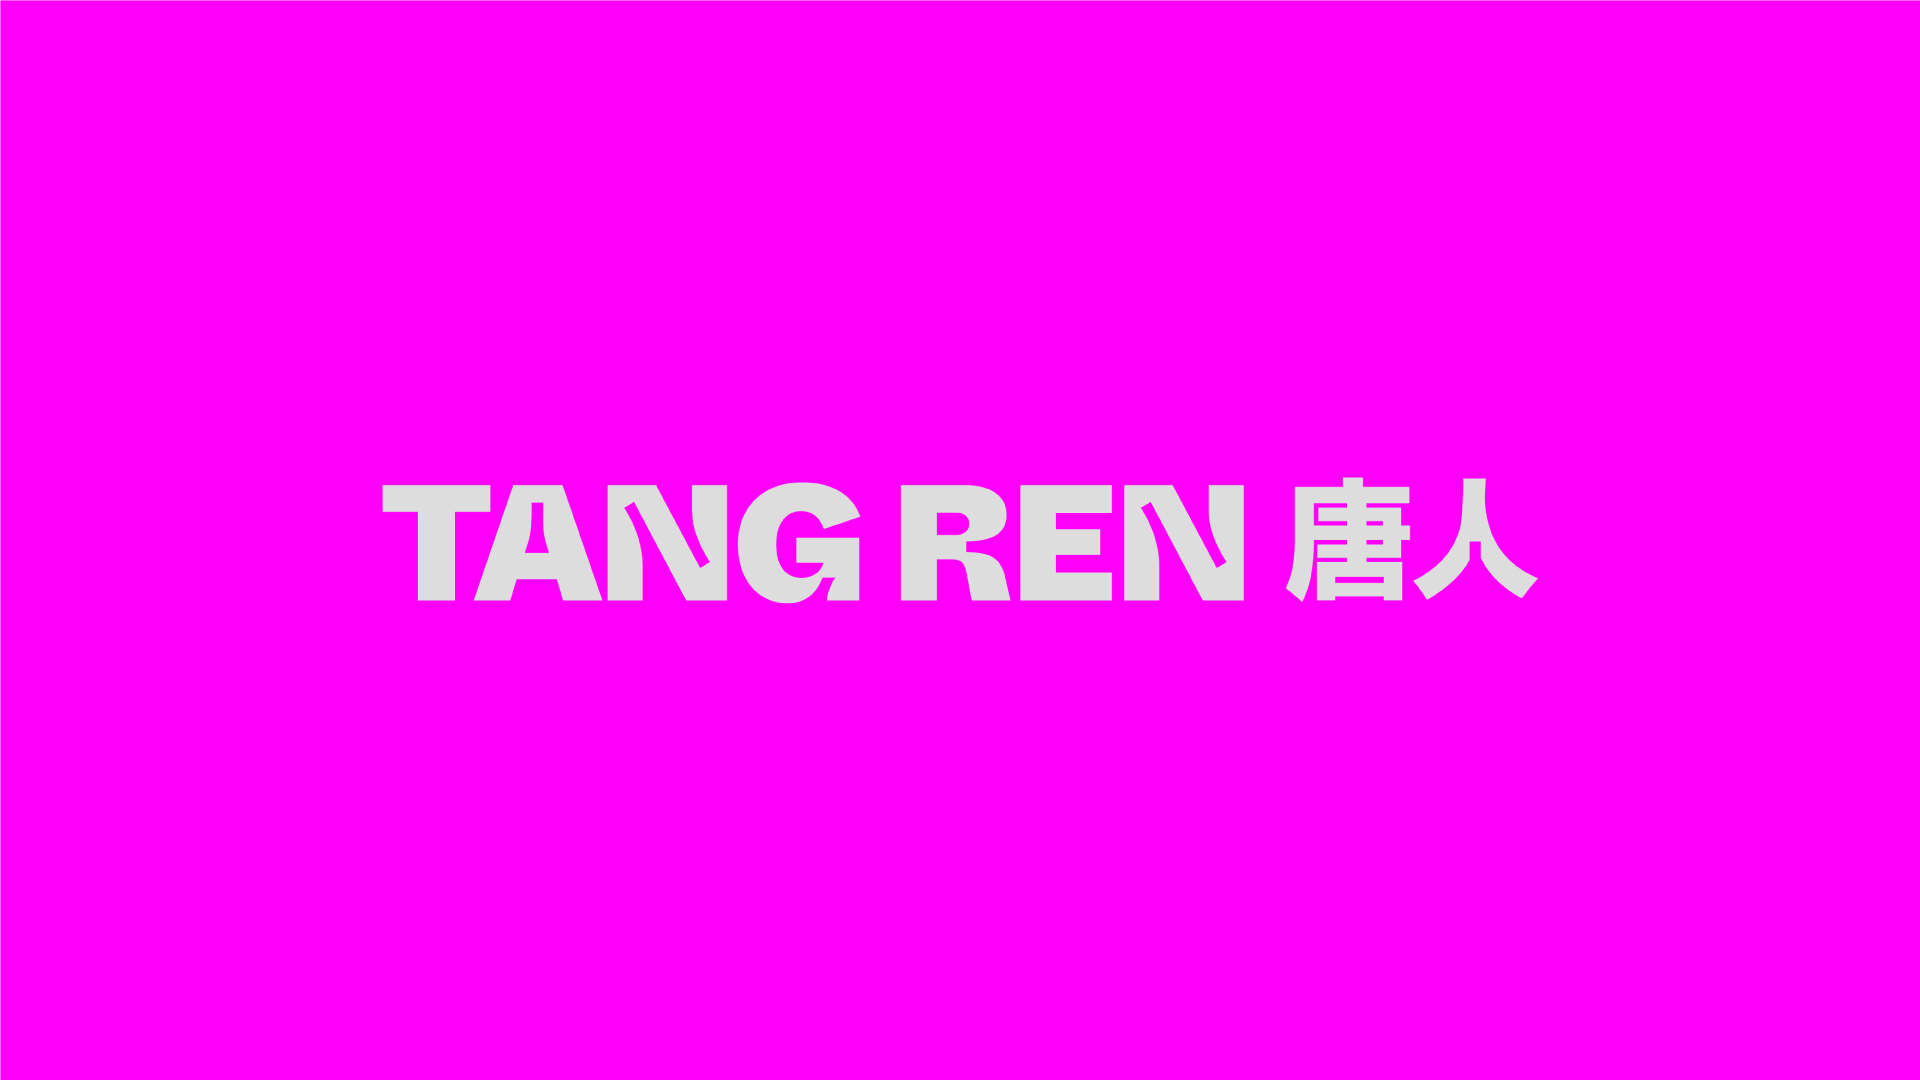 Tang Ren logo on pink background